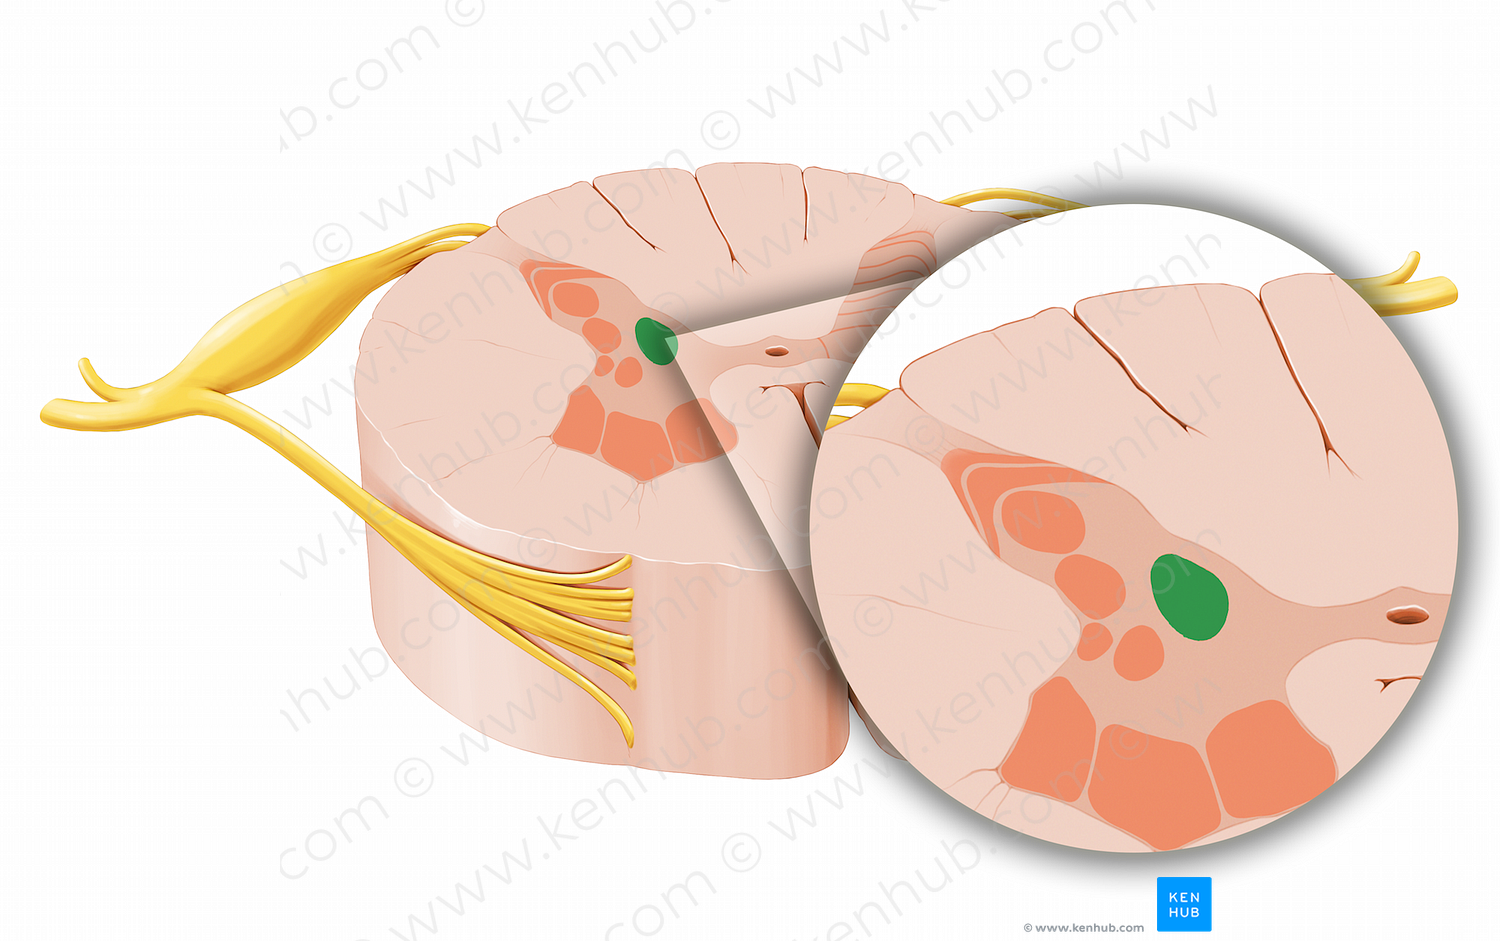 Posterior thoracic nucleus (#12030)